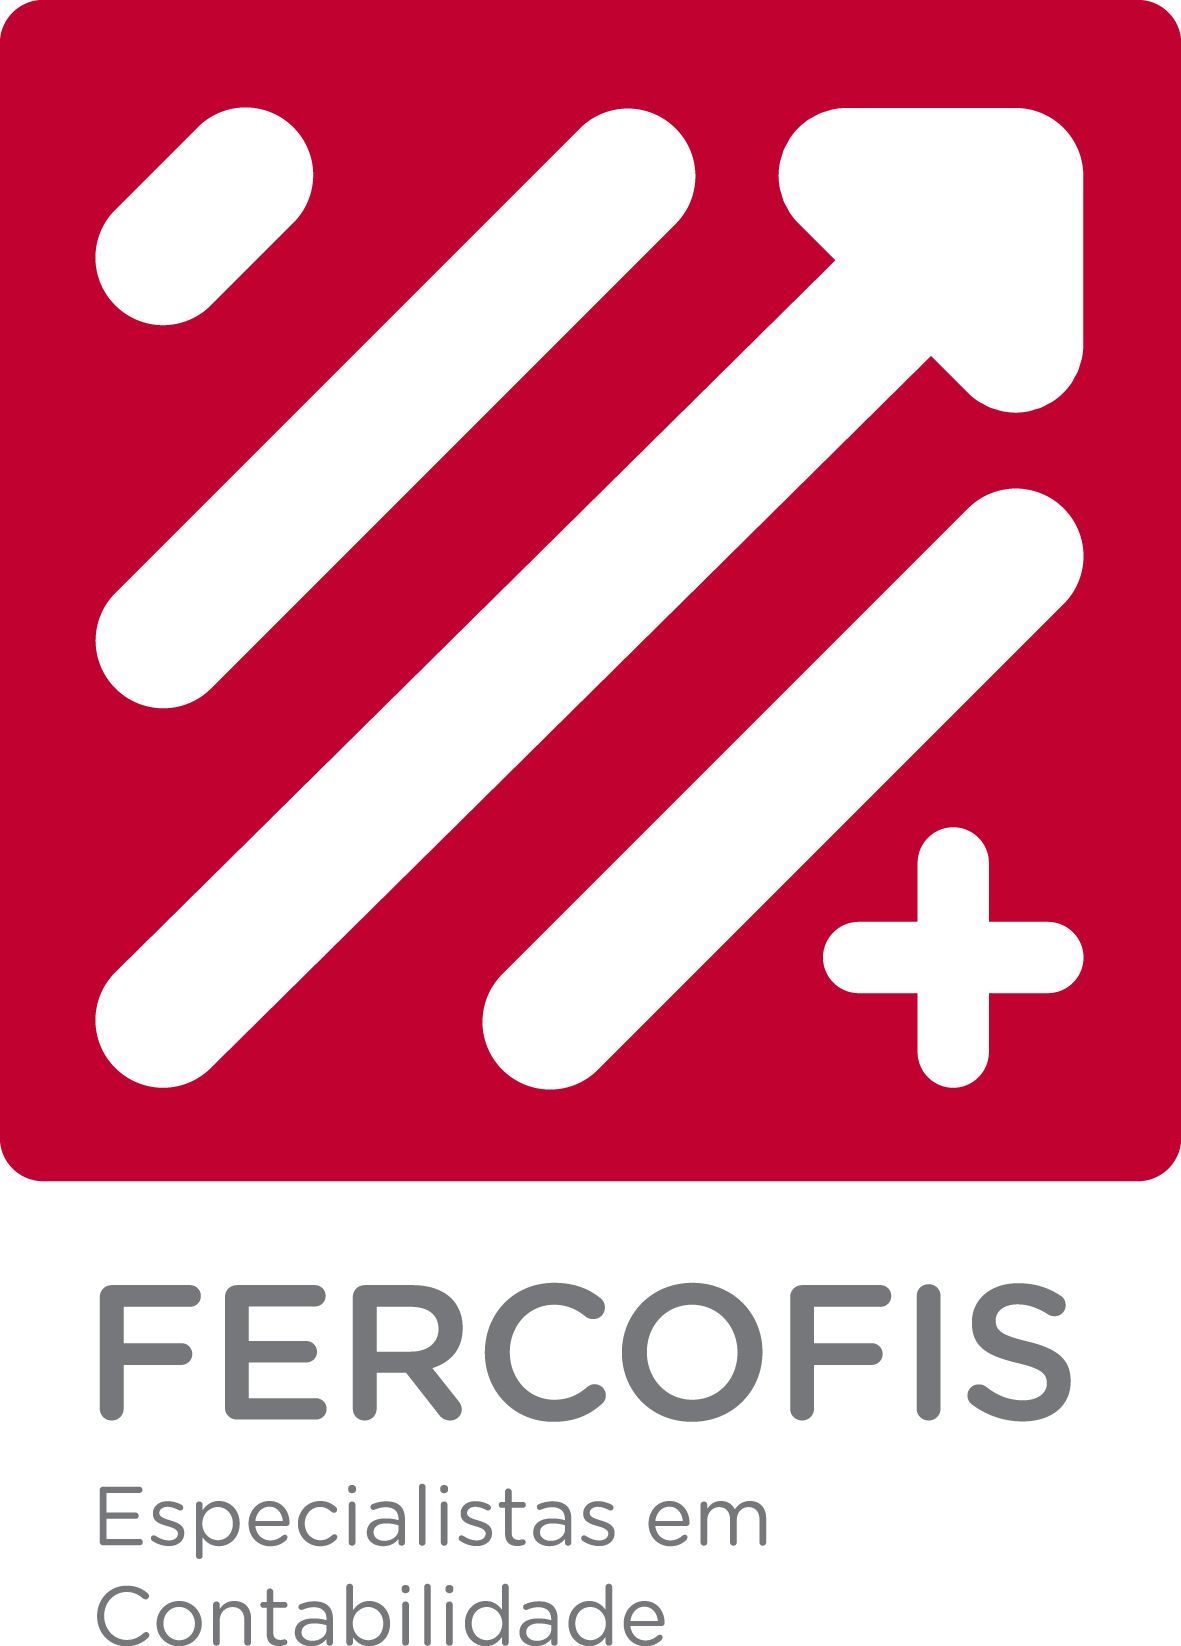 Fercofis - Especialistas em Contabilidade  Lda - Braga - Profissionais Financeiros e de Planeamento